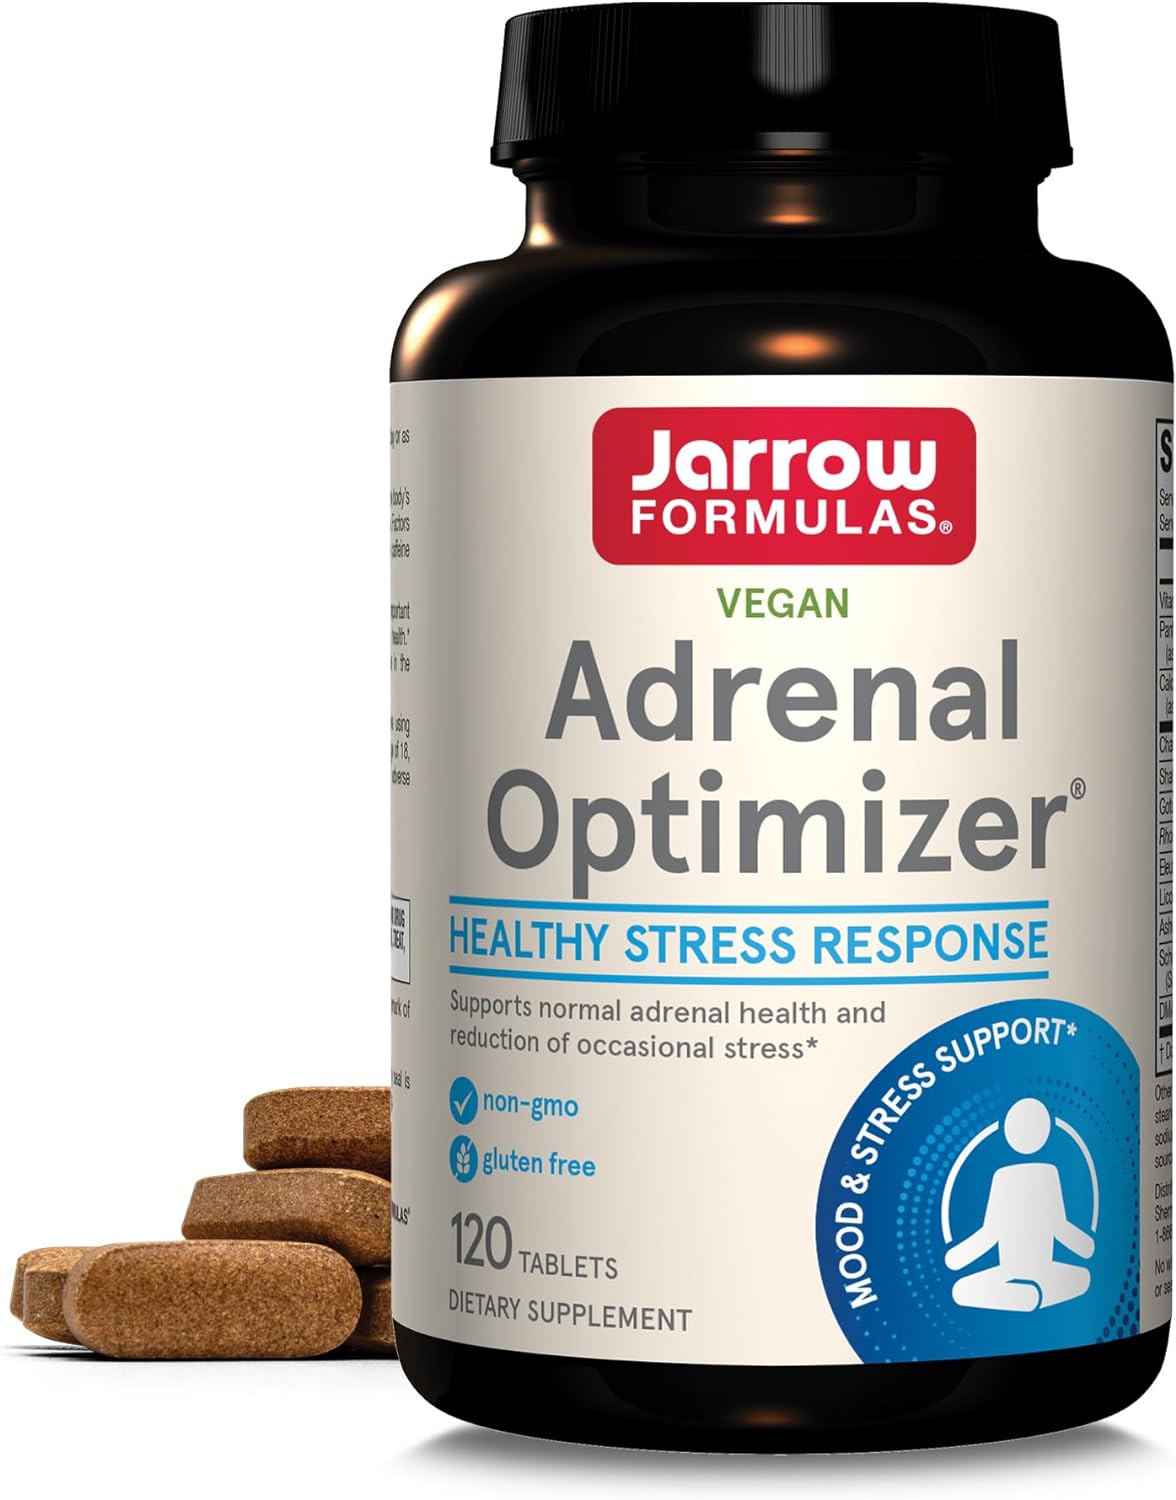 Jarrow Formulas Adrenal Optimizer - 120 Tablets - Dietary Supplement S4.8 Ounces